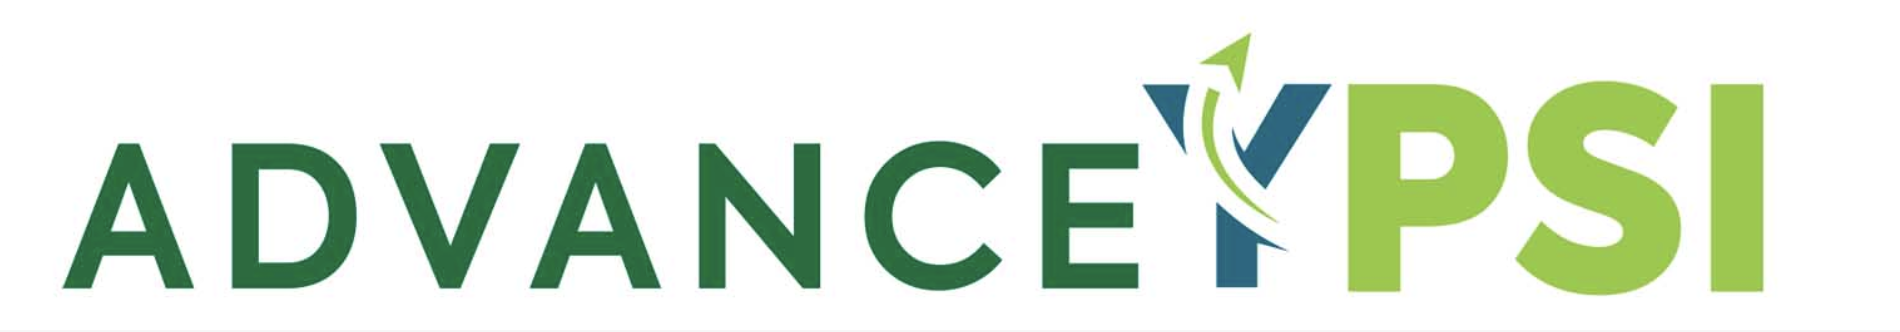 'Advance Ypsi' logo